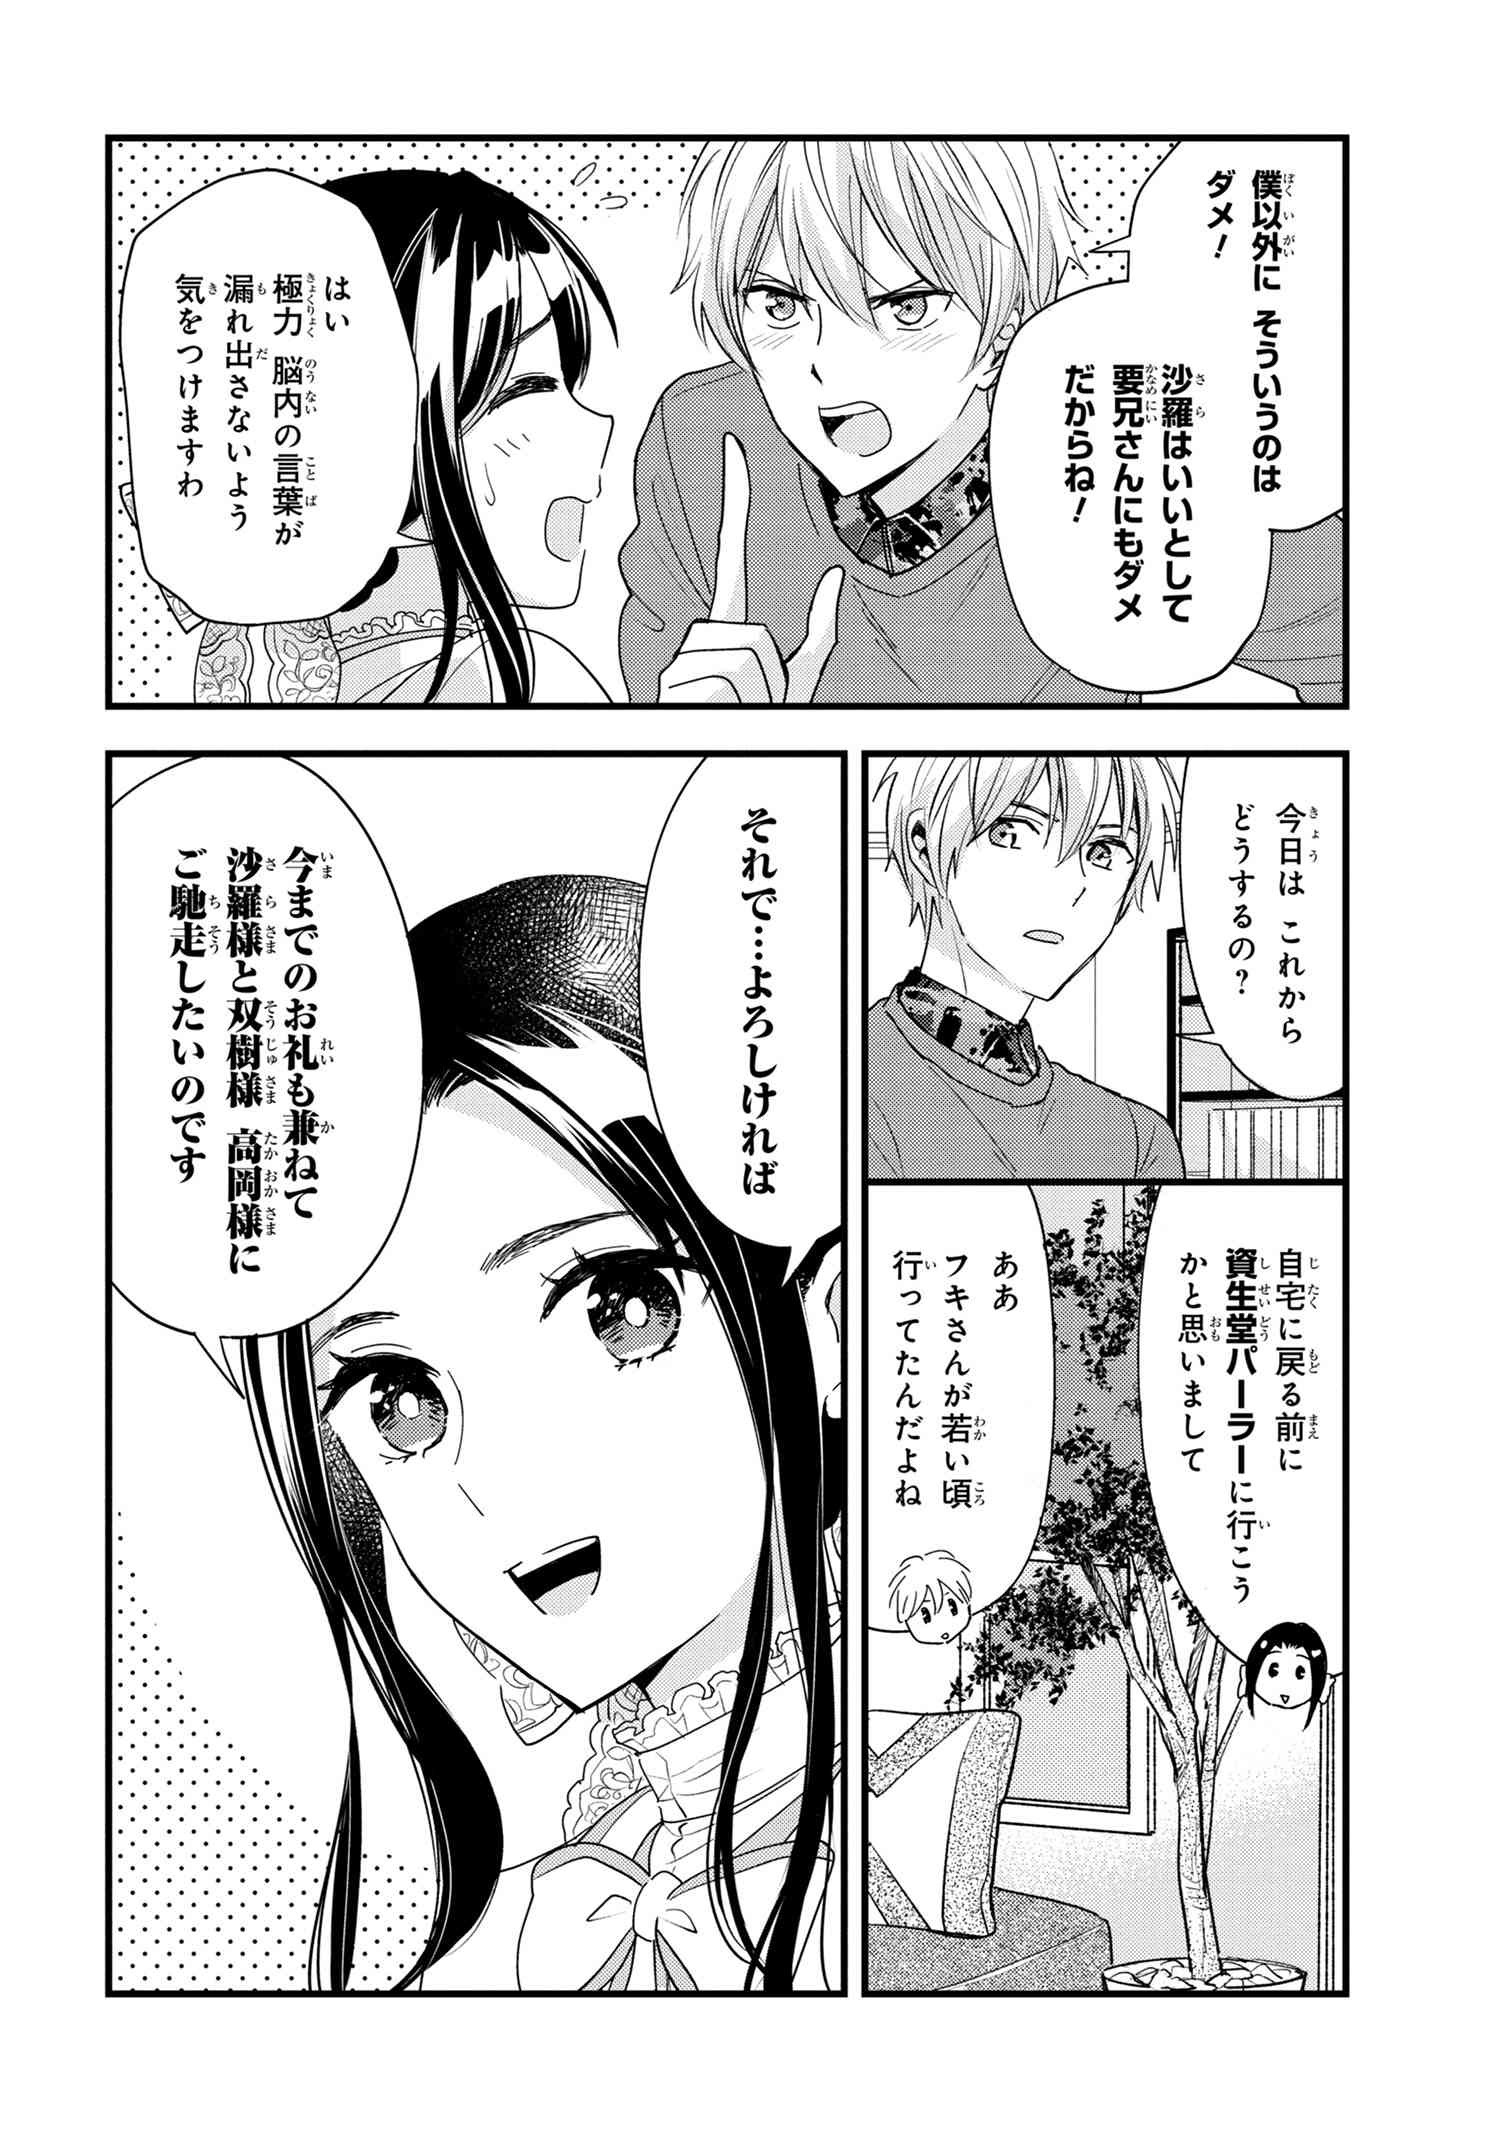 Reiko no Fuugi Akuyaku Reijou to Yobarete imasu ga, tada no Binbou Musume desu - Chapter 15-2 - Page 4